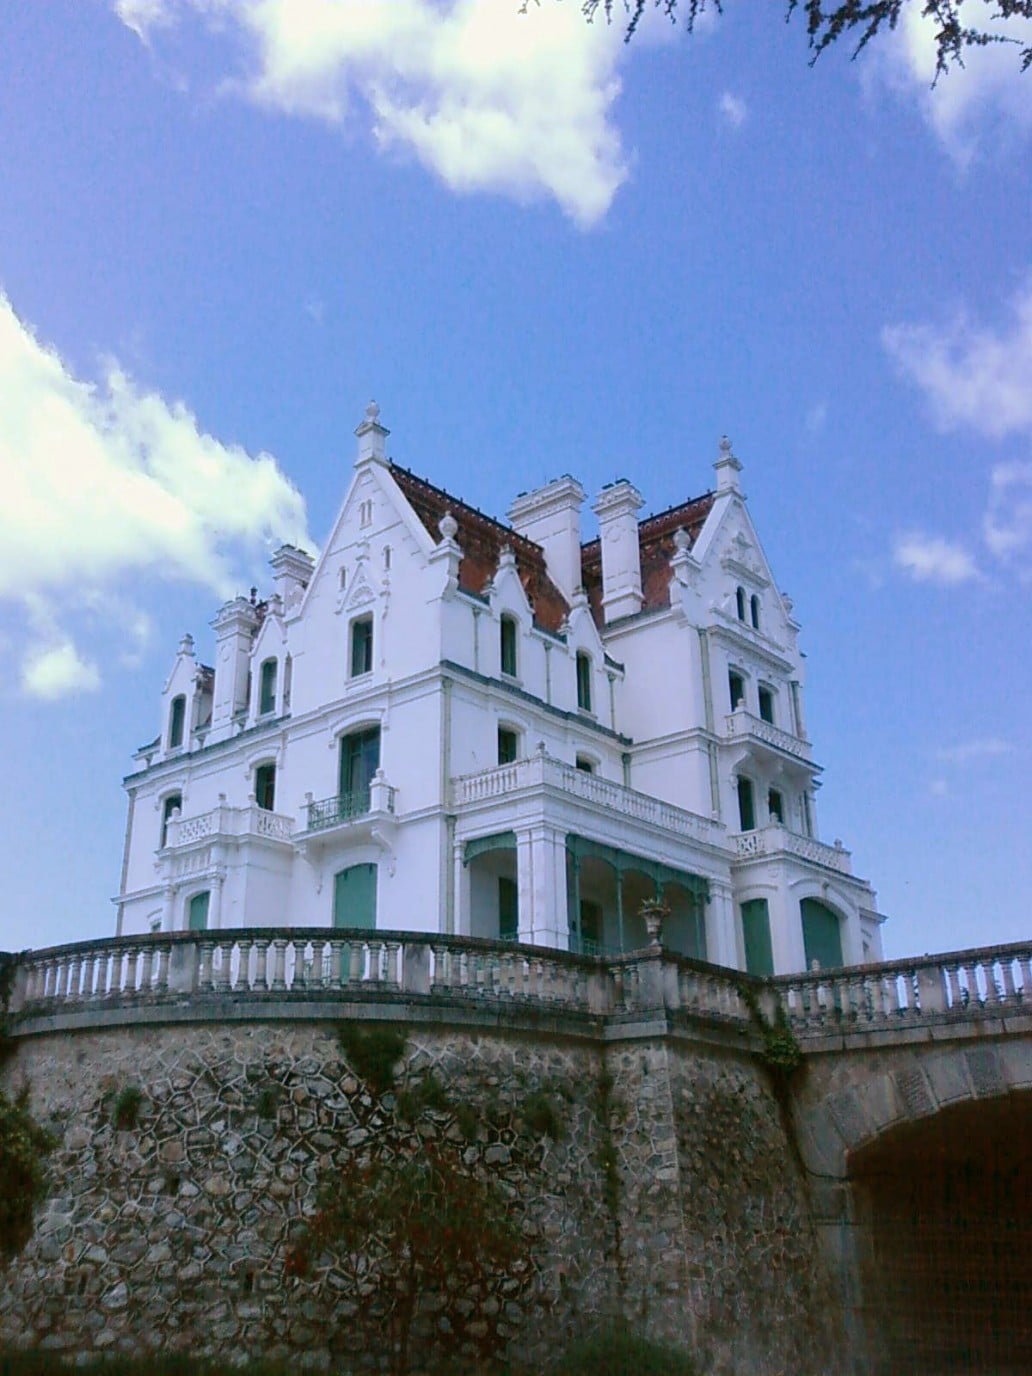 Chateau-Valmy-Argeles-sur-mer